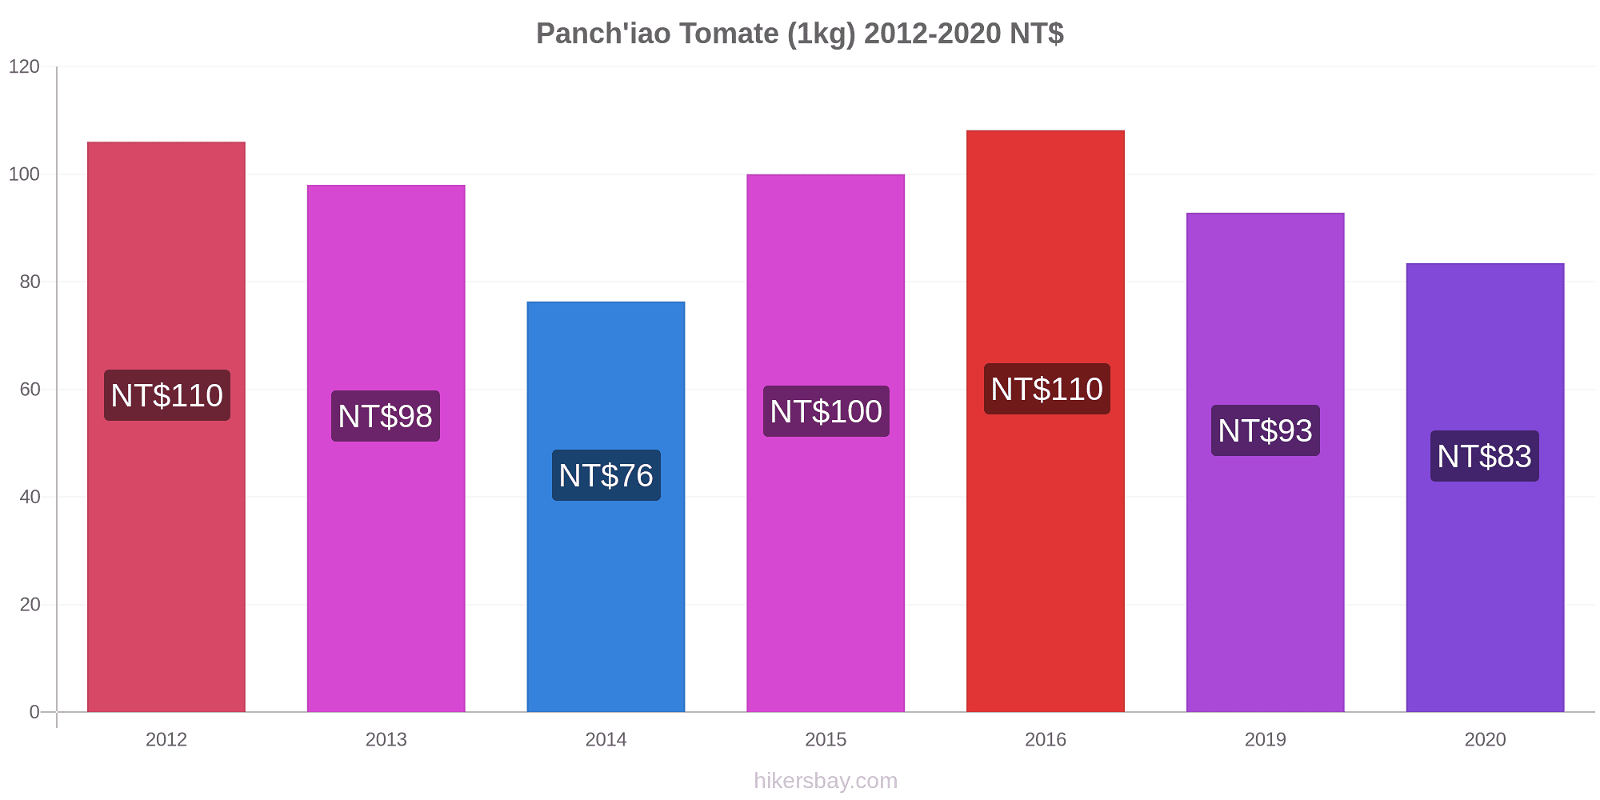 Panch'iao cambios de precios Tomate (1kg) hikersbay.com